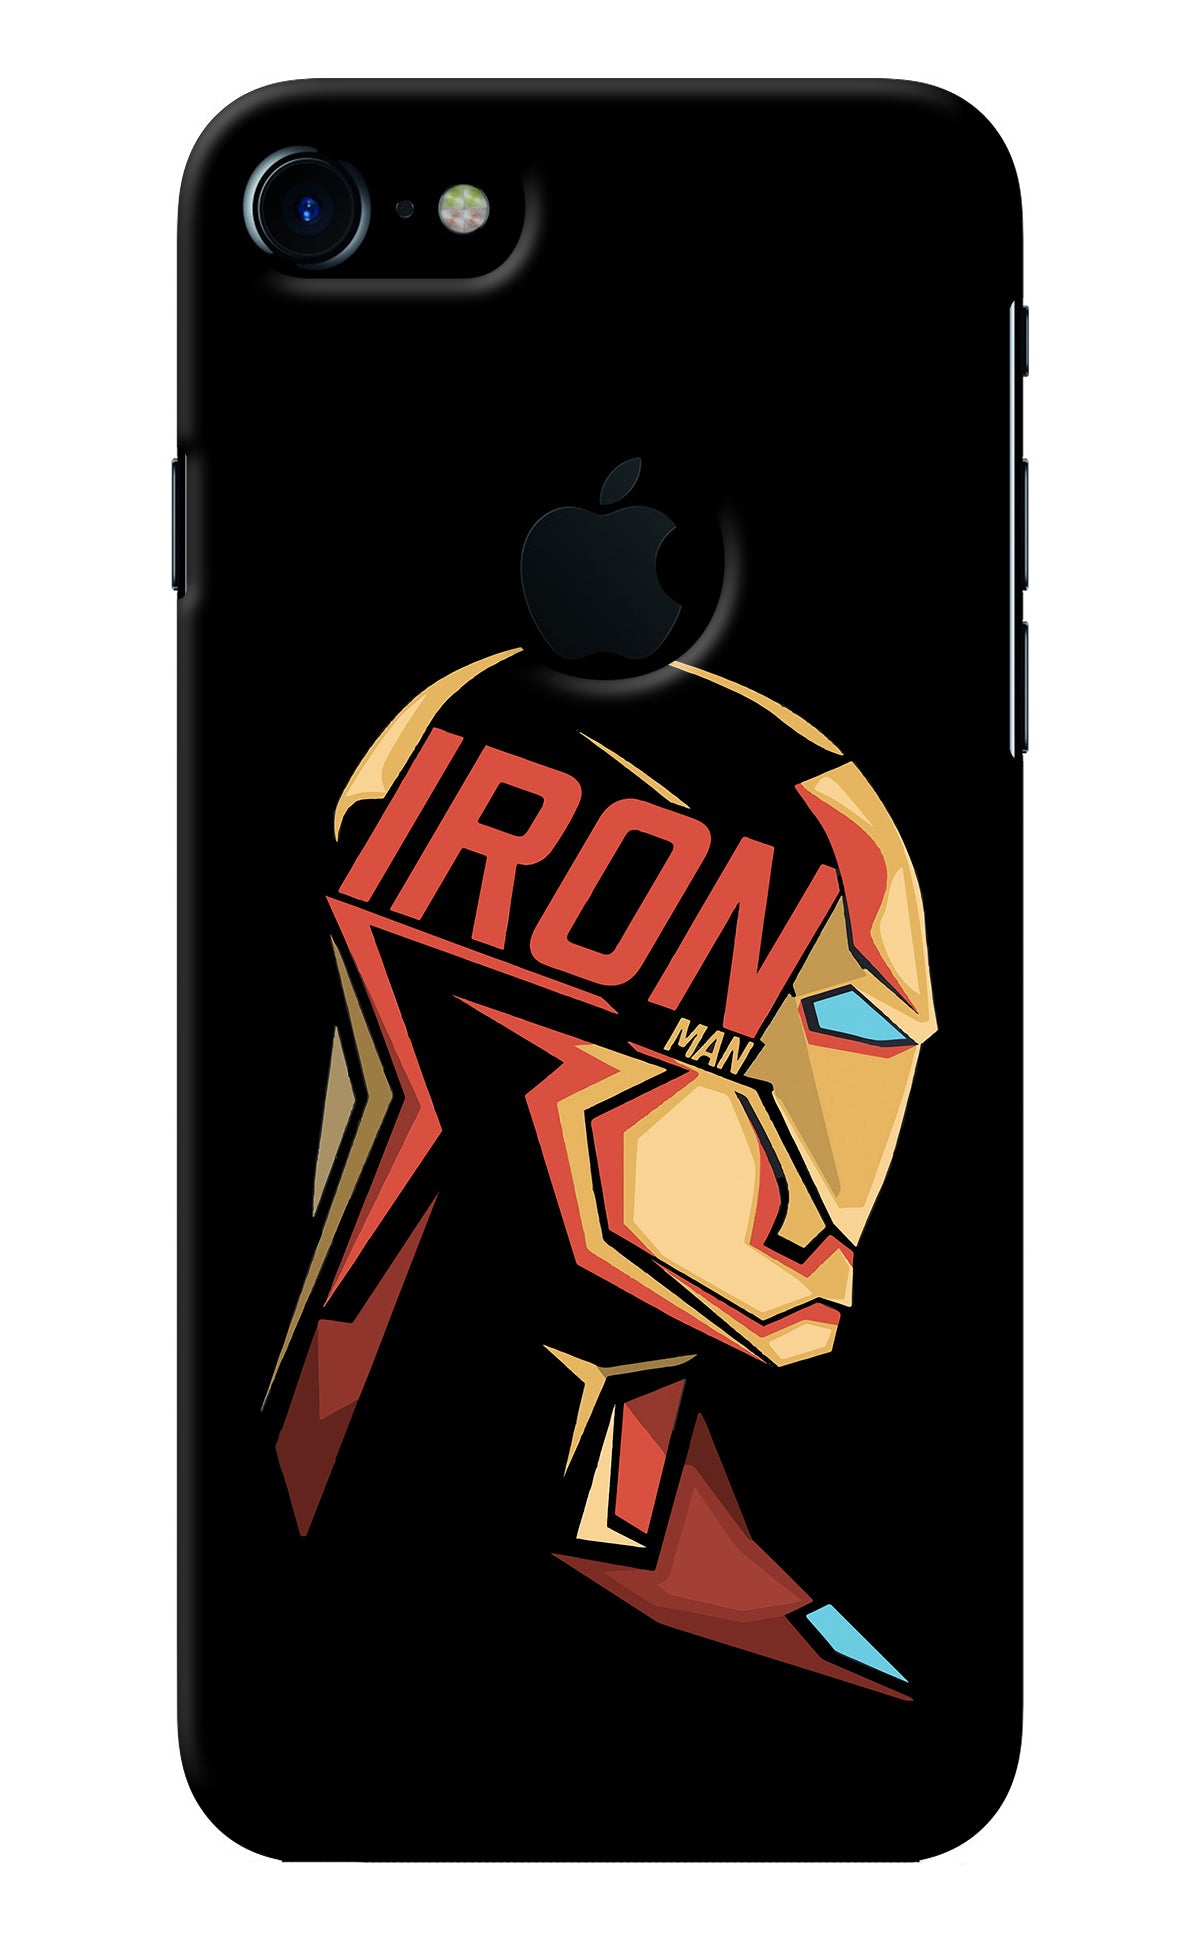 IronMan iPhone 7 Logocut Back Cover